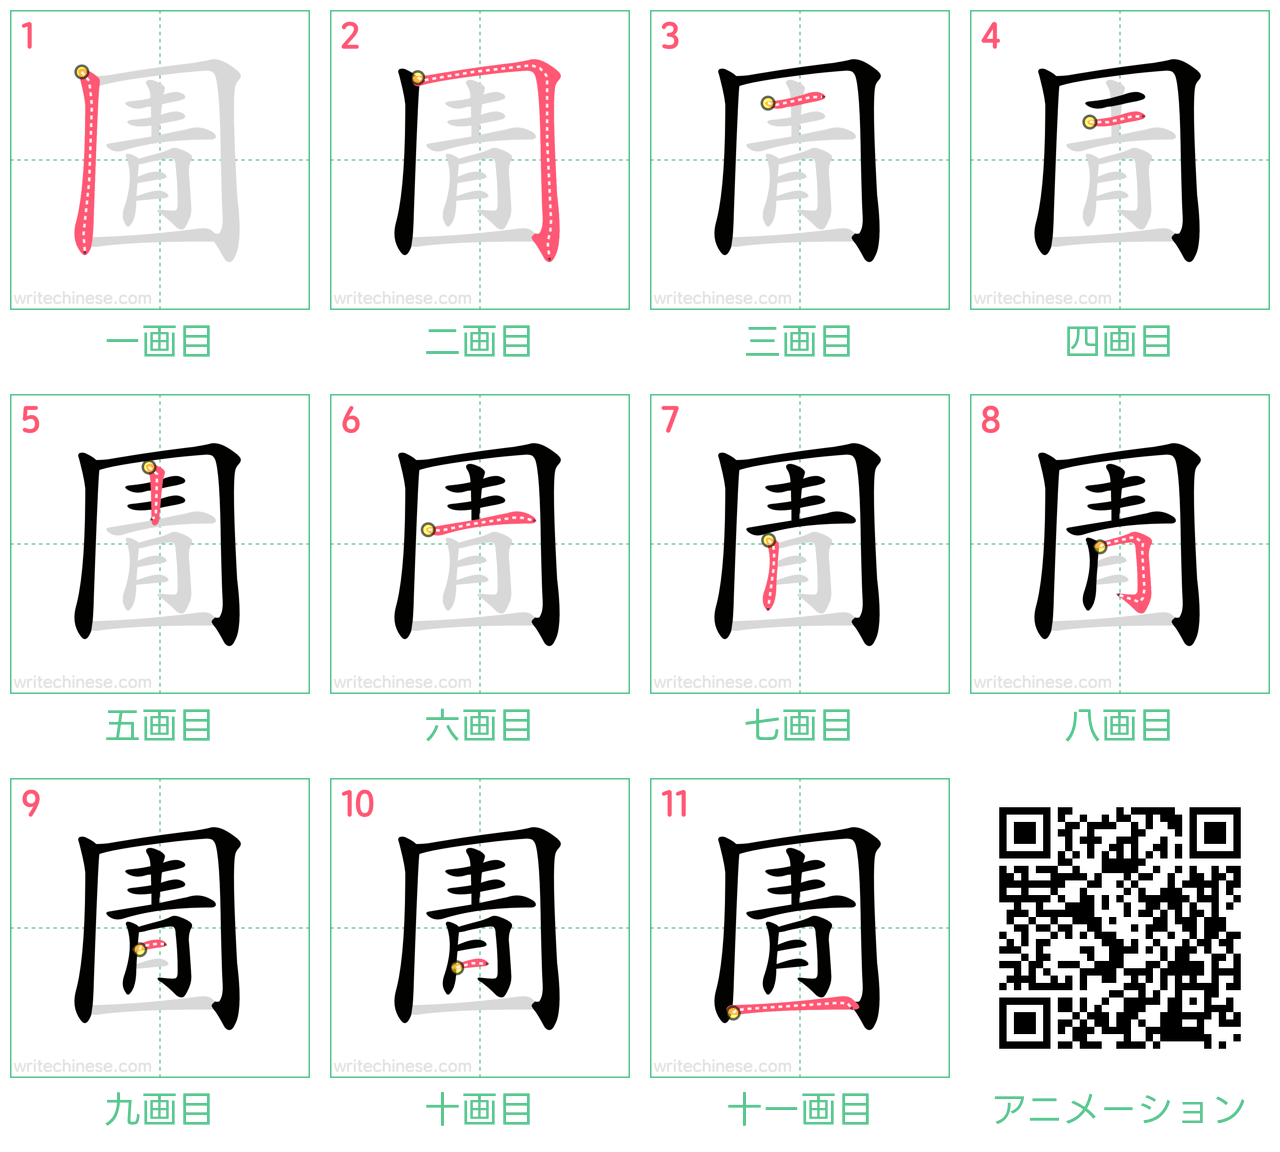 中国語の漢字「圊」の書き順 筆順